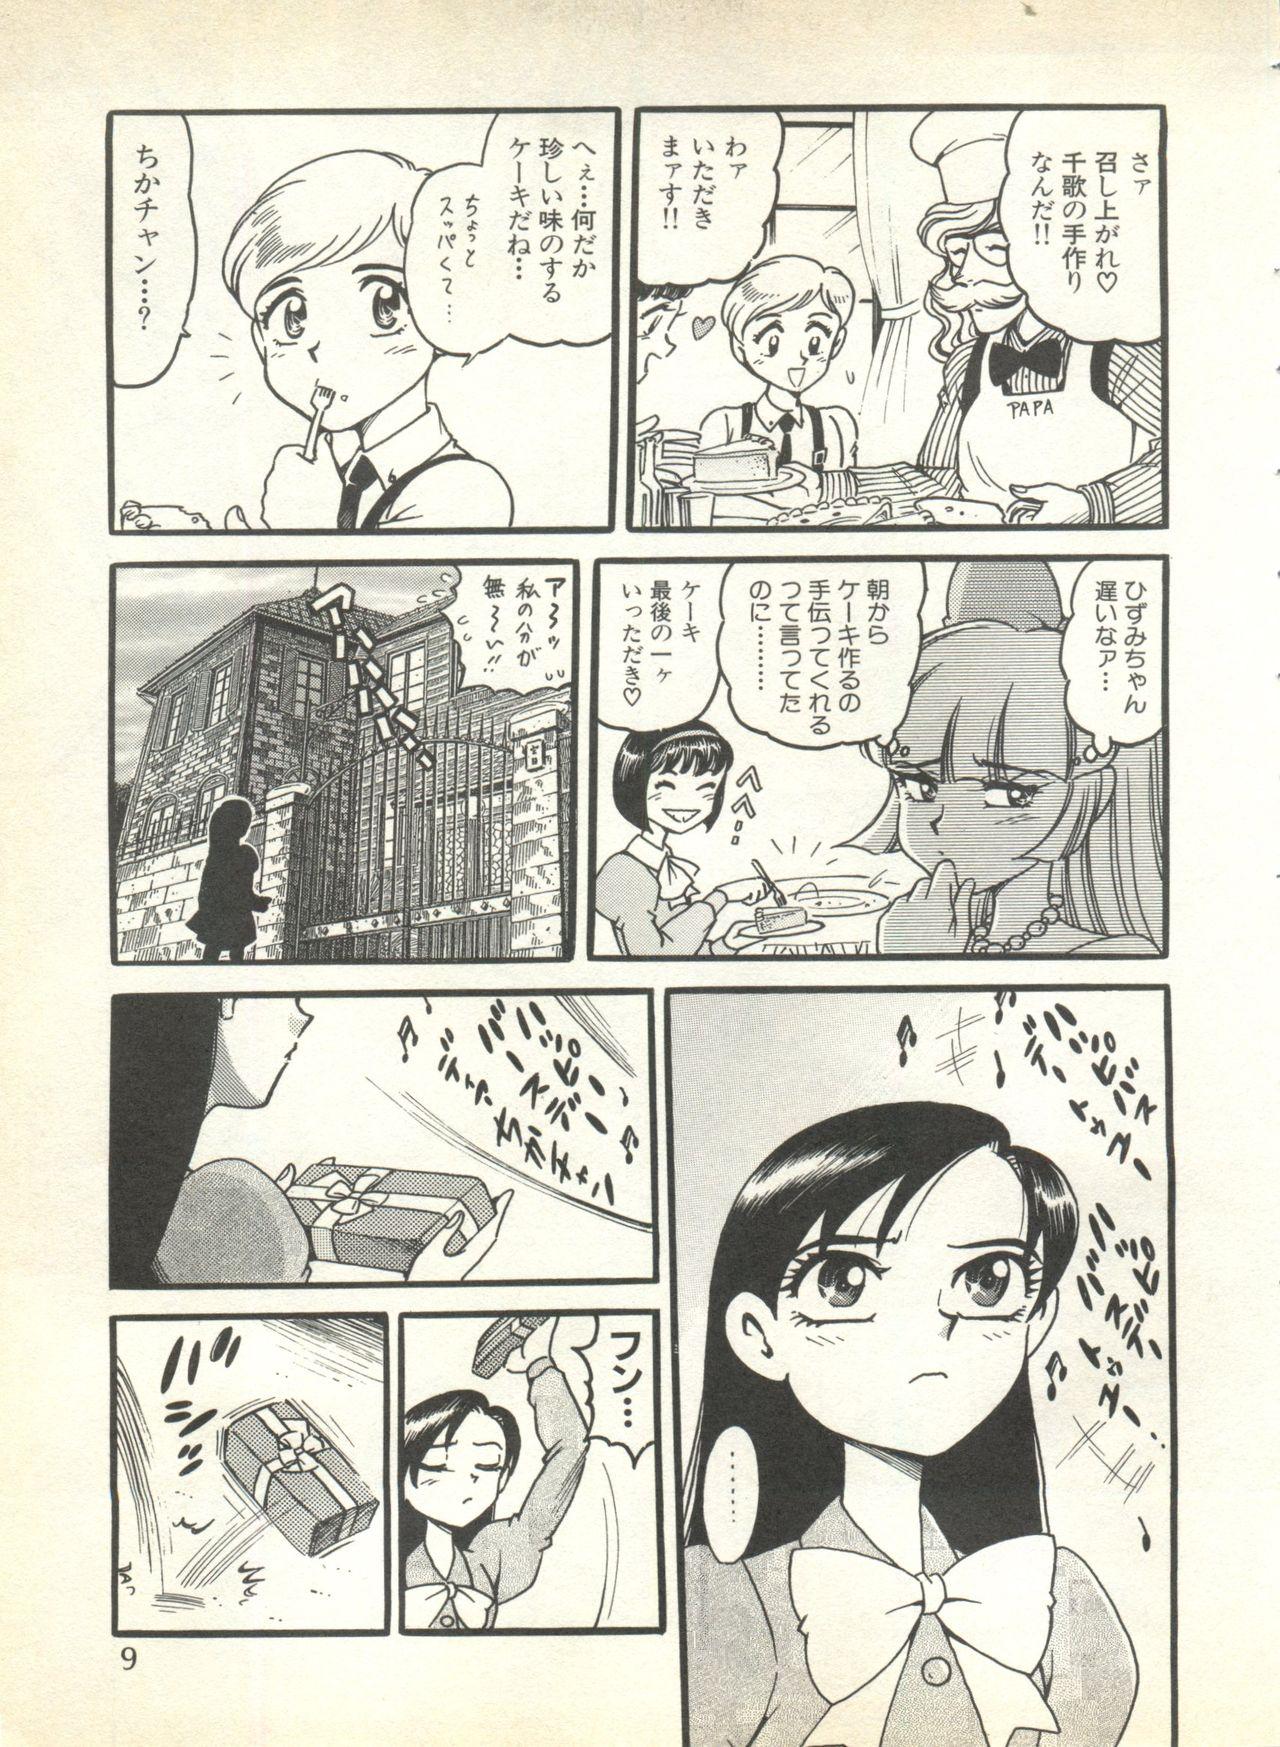 Gemendo Pai;kuu 1999 October Vol. 22 - To heart Agent aika Tenshi ni narumon No Condom - Page 11